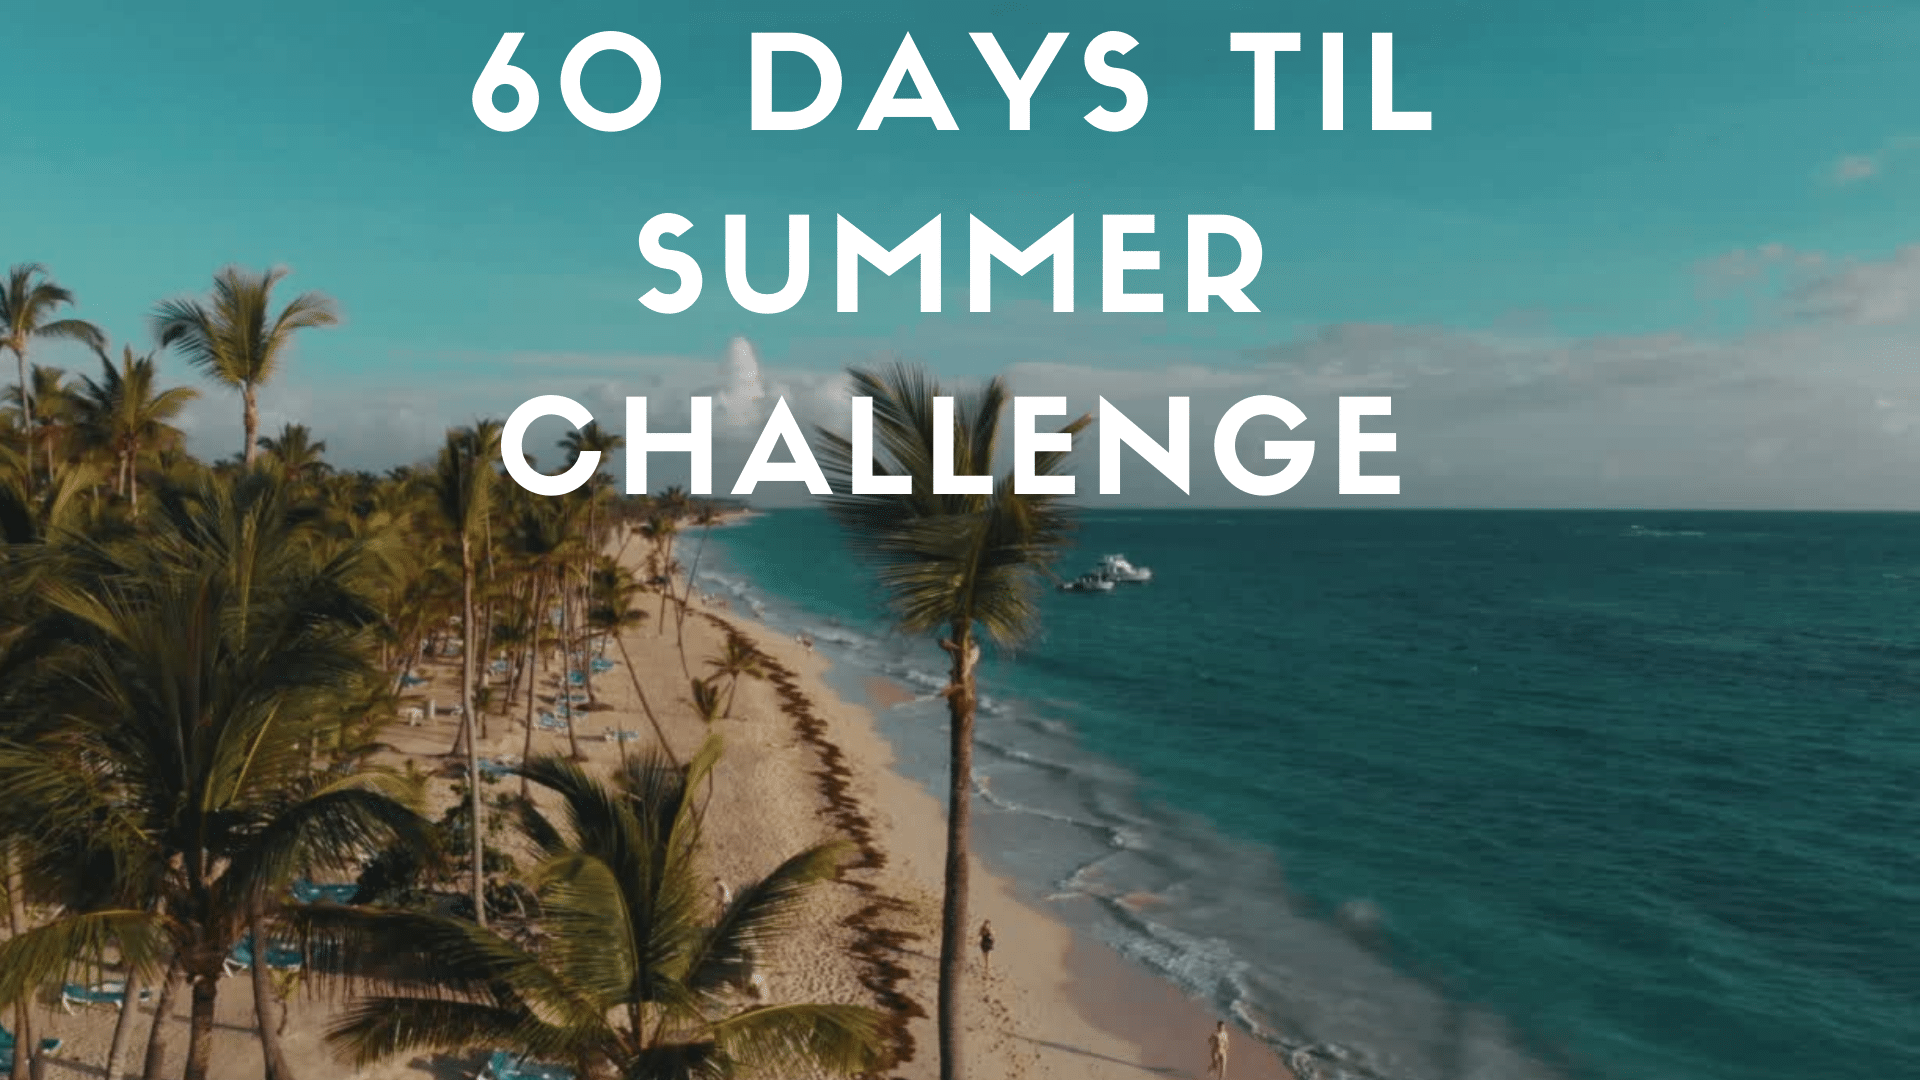 60 Days til Summer Challenge Abby England Wellness